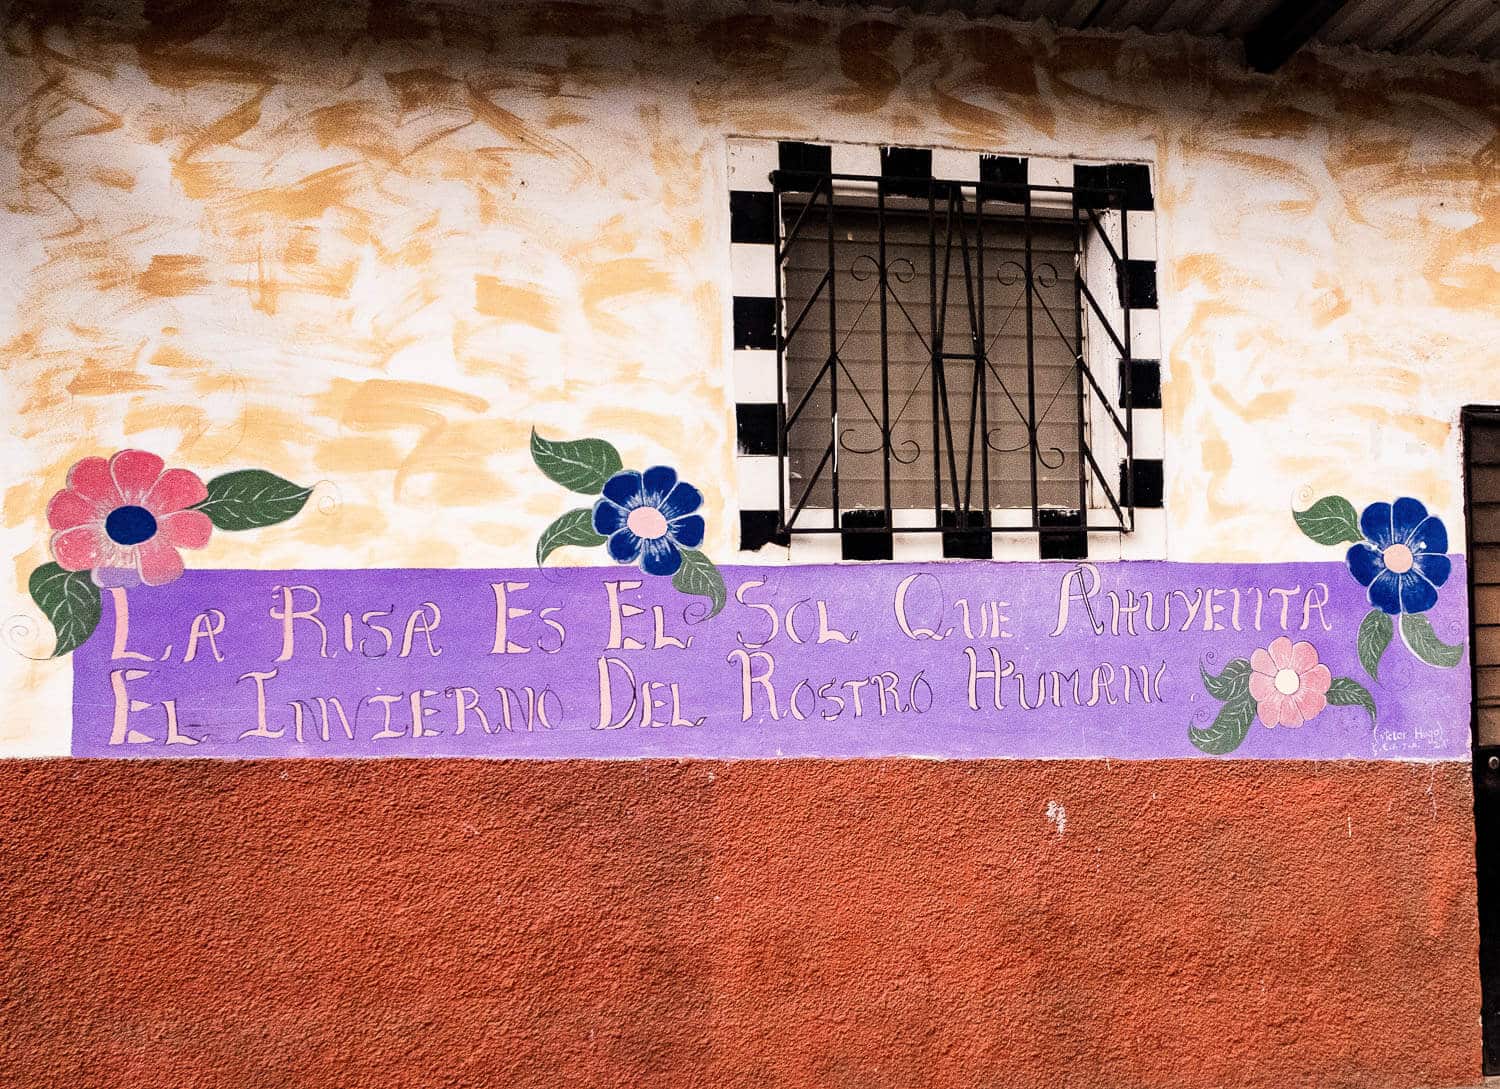 street art in Apaneca, a village on El Salvador's ruta de las Flores